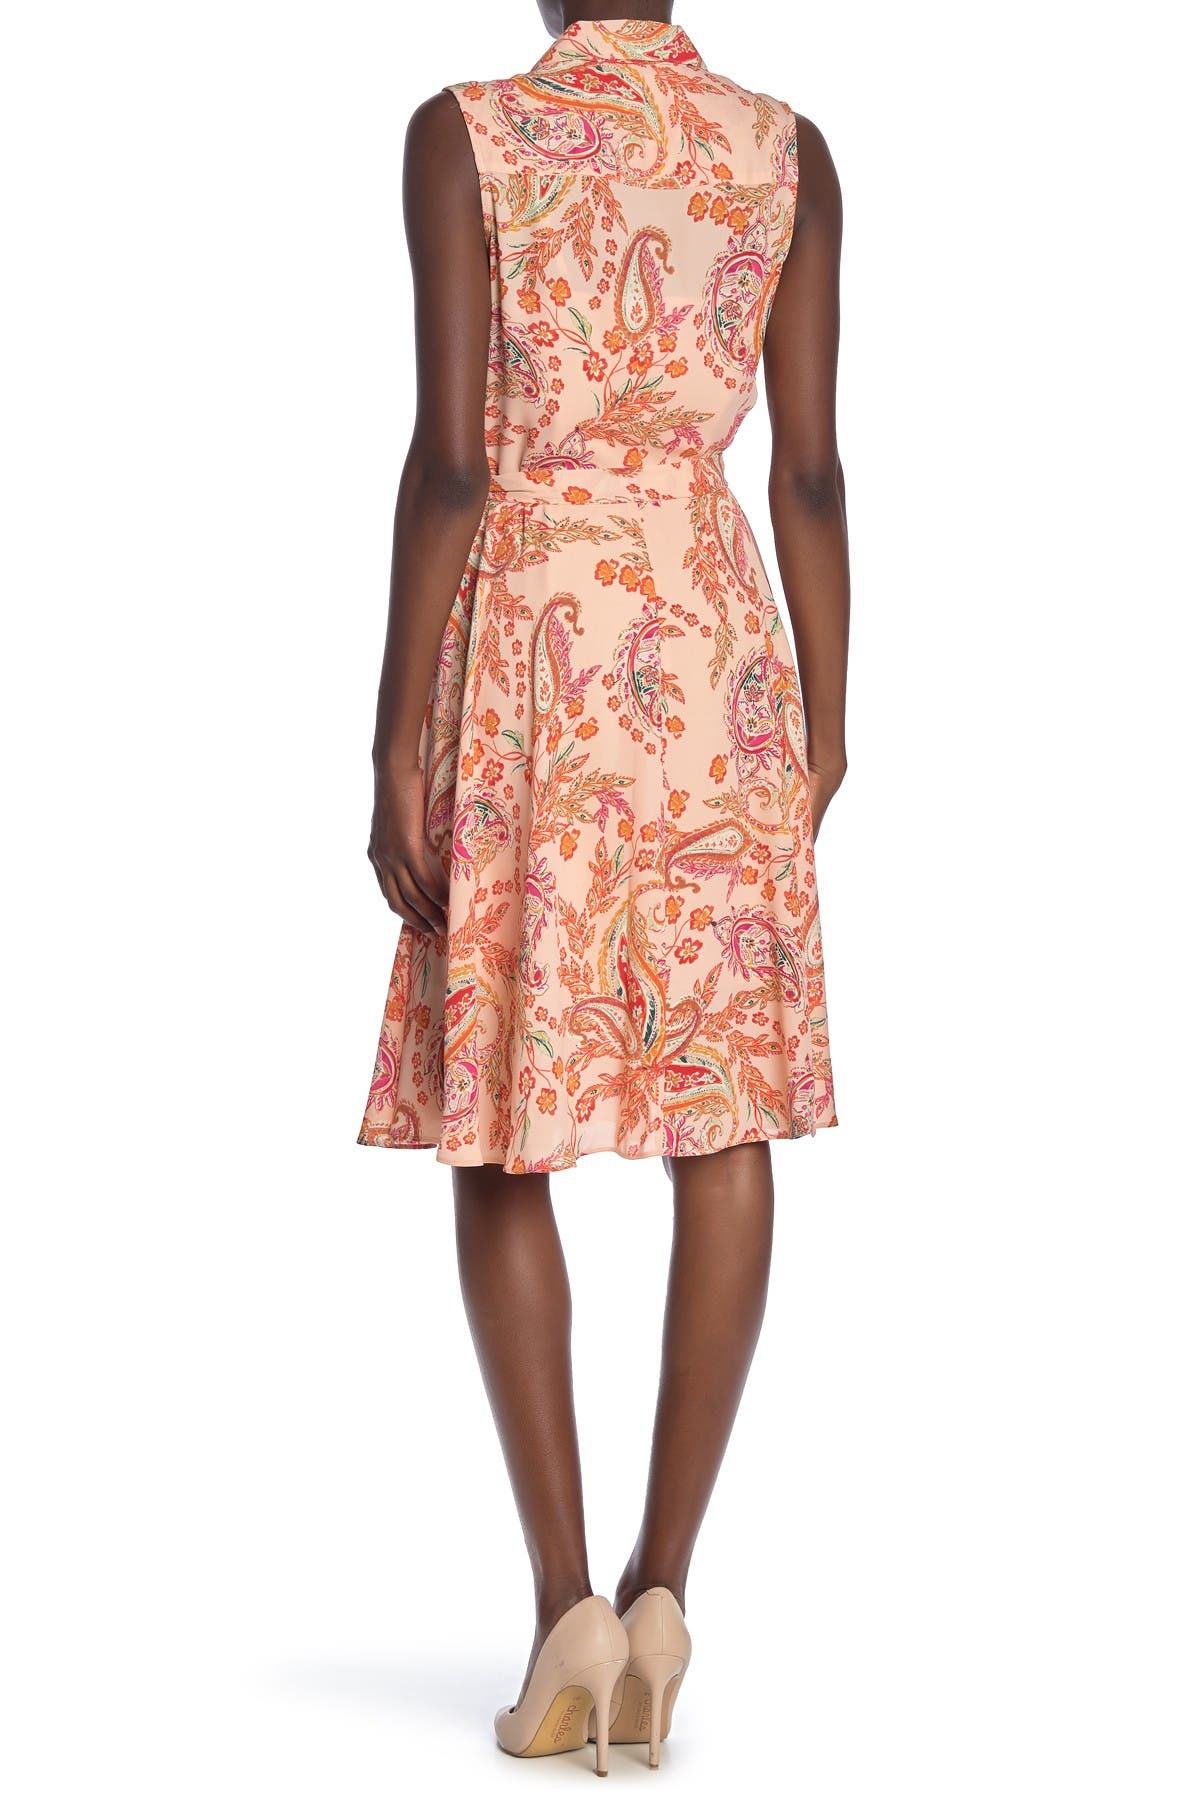 NANETTE nanette lepore | Sleeveless Floral Pintuck Dress | Nordstrom Rack